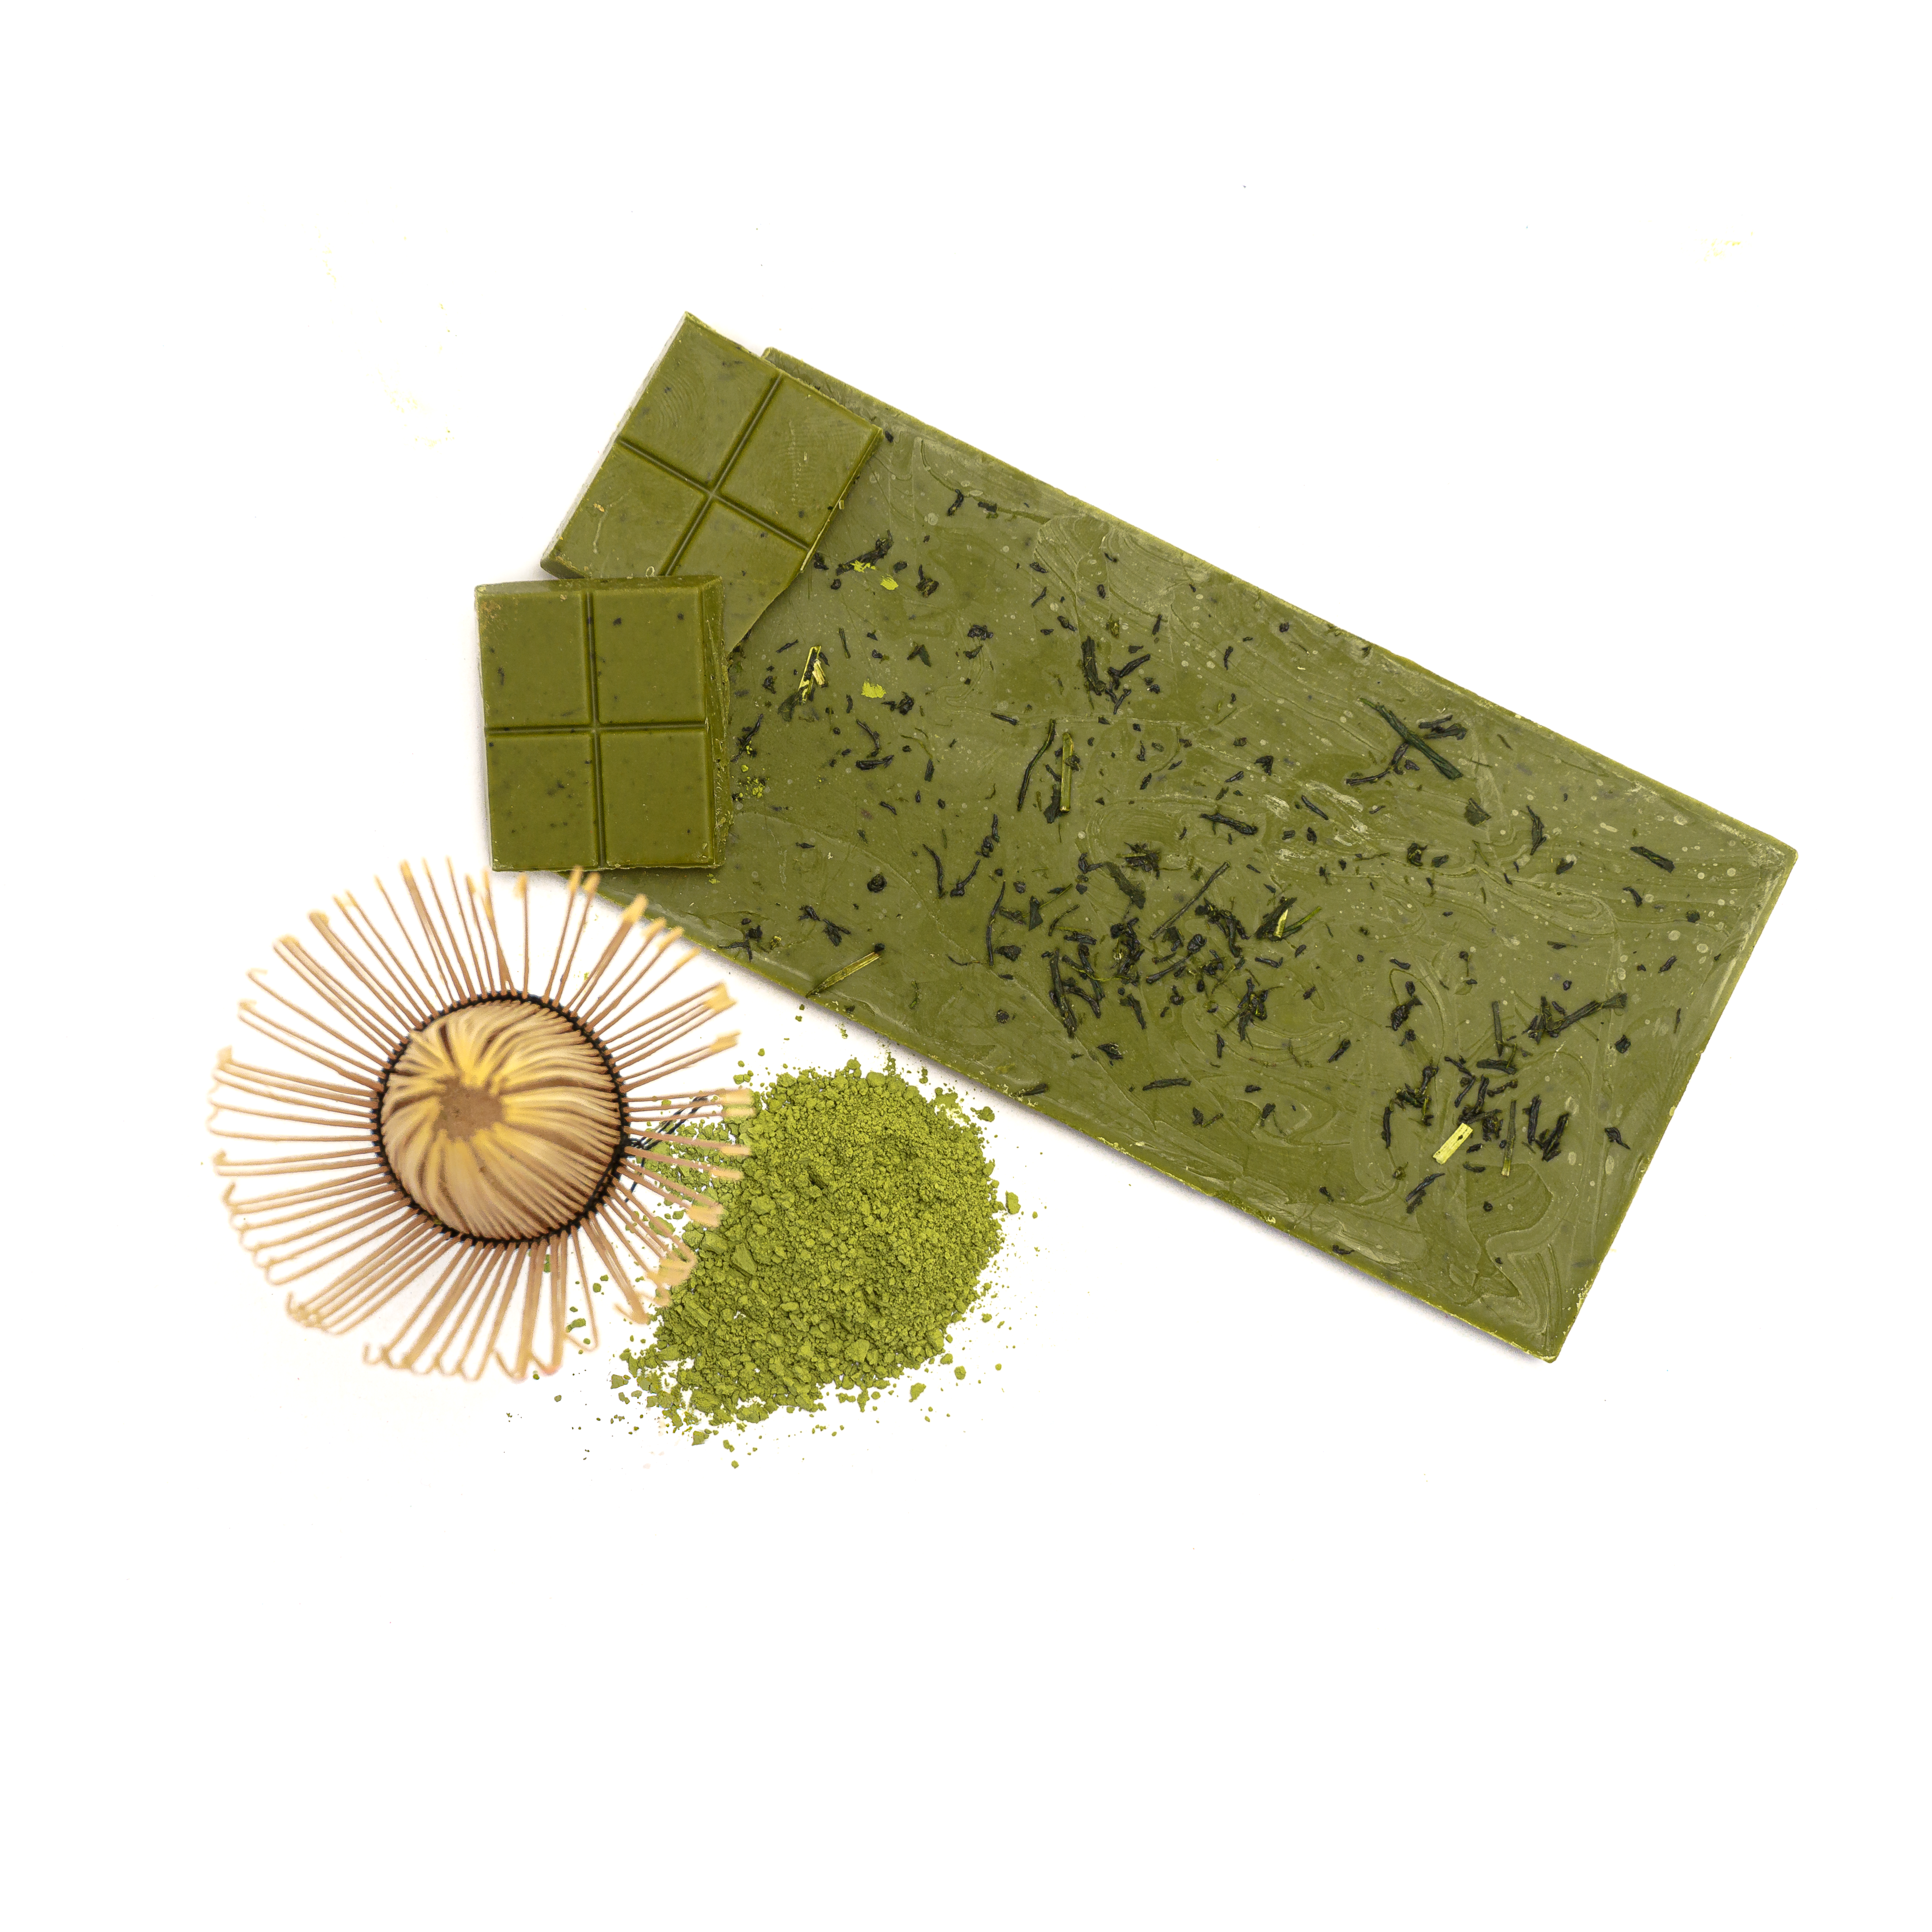 KEIKO Matcha Classic White Chocolate with Green Tea, 30g, organic